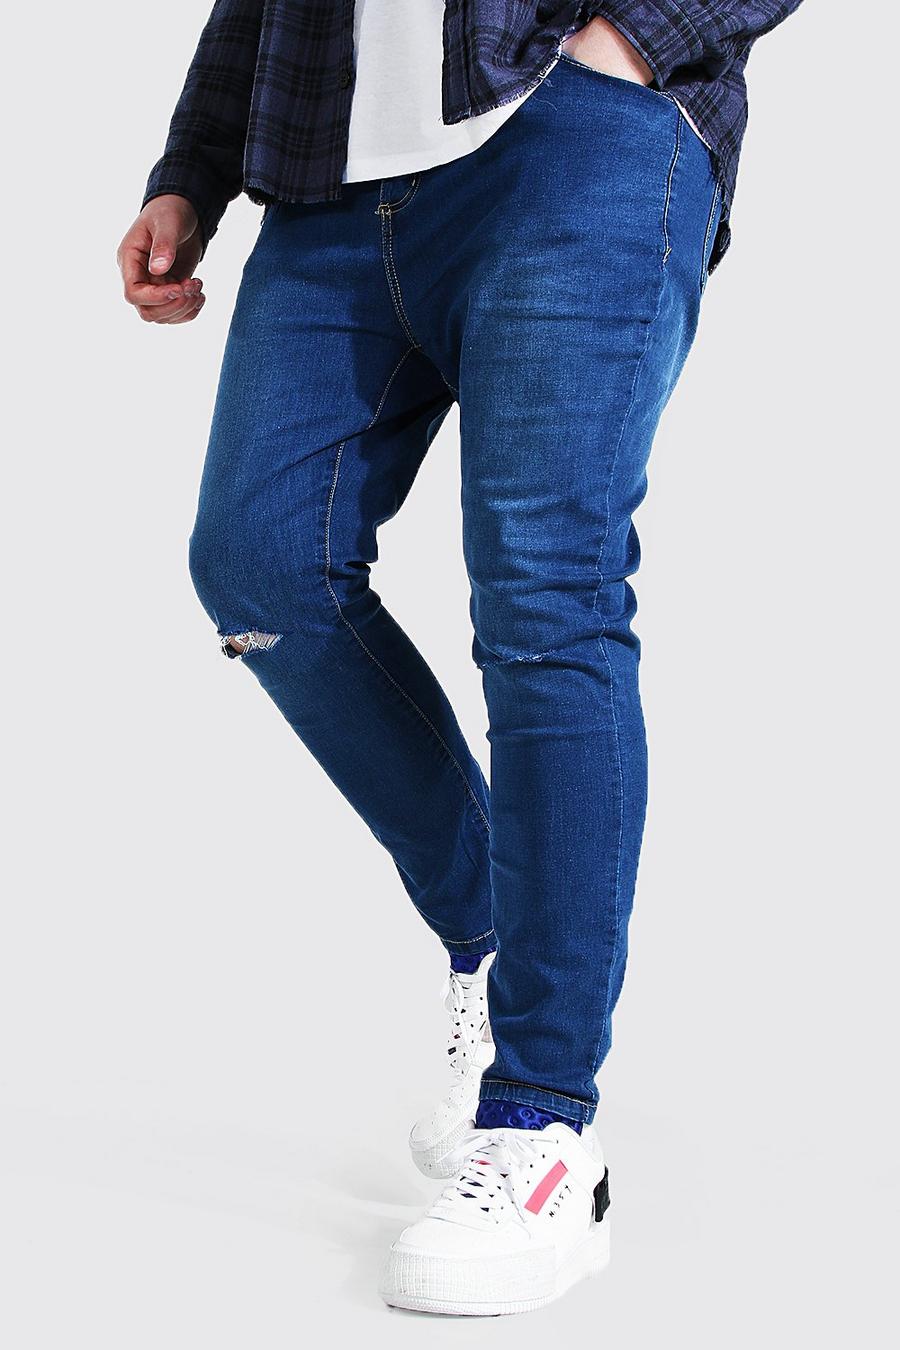 כחול ביניים סופר סקיני ג'ינס עם חריצים בברכיים לגברים גדולים וגבוהים image number 1